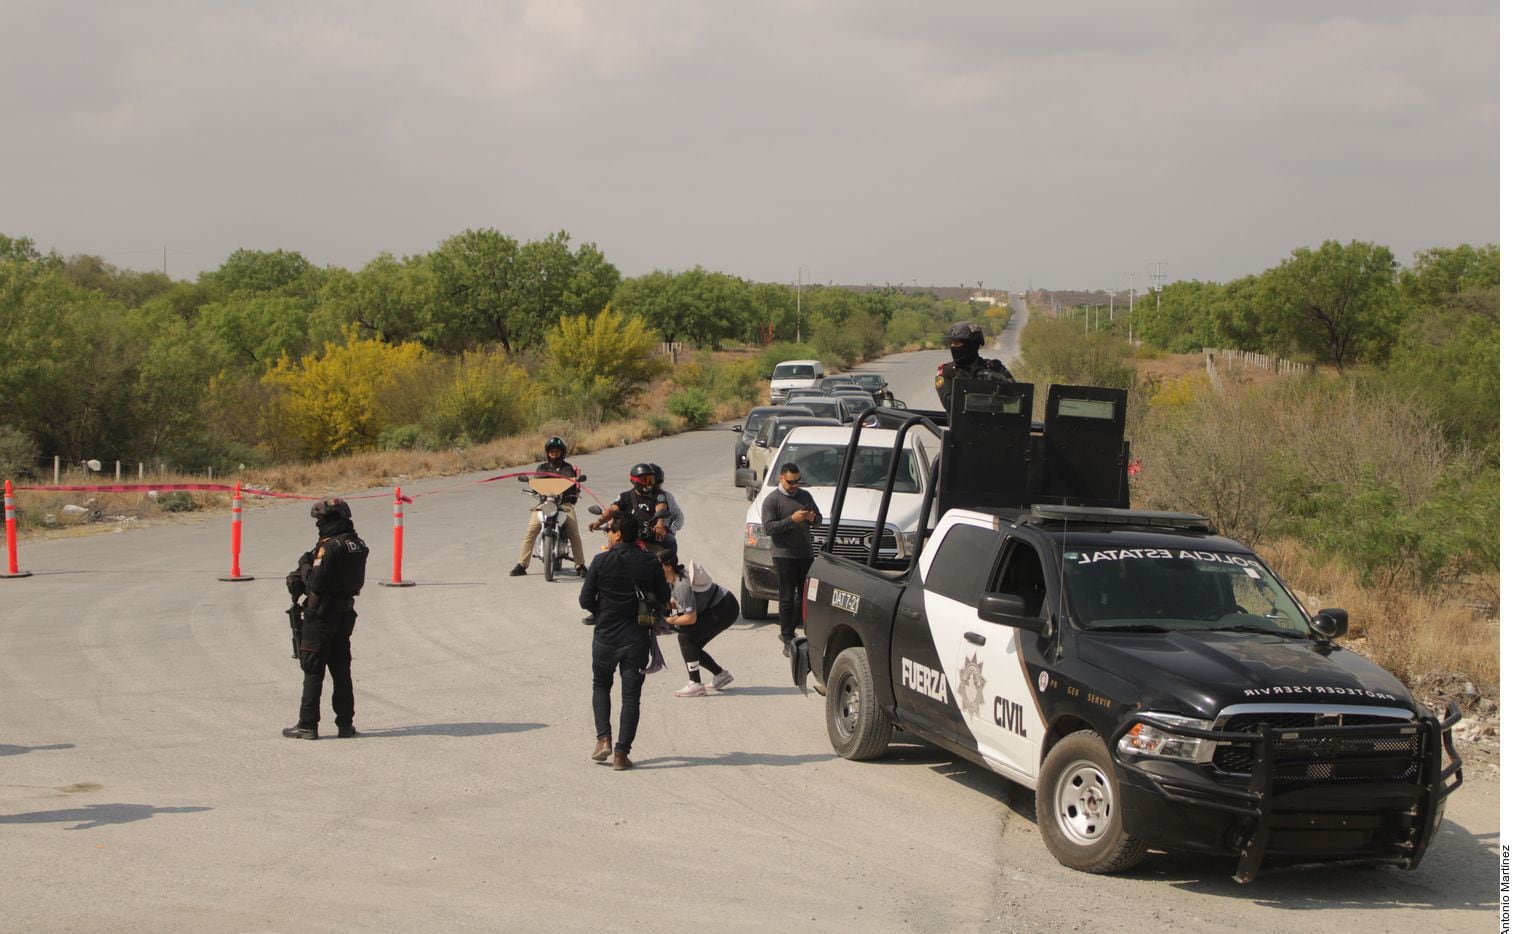 Autoridades de Nuevo León y voluntarios llevaban 12 días intentando localizar a la joven...